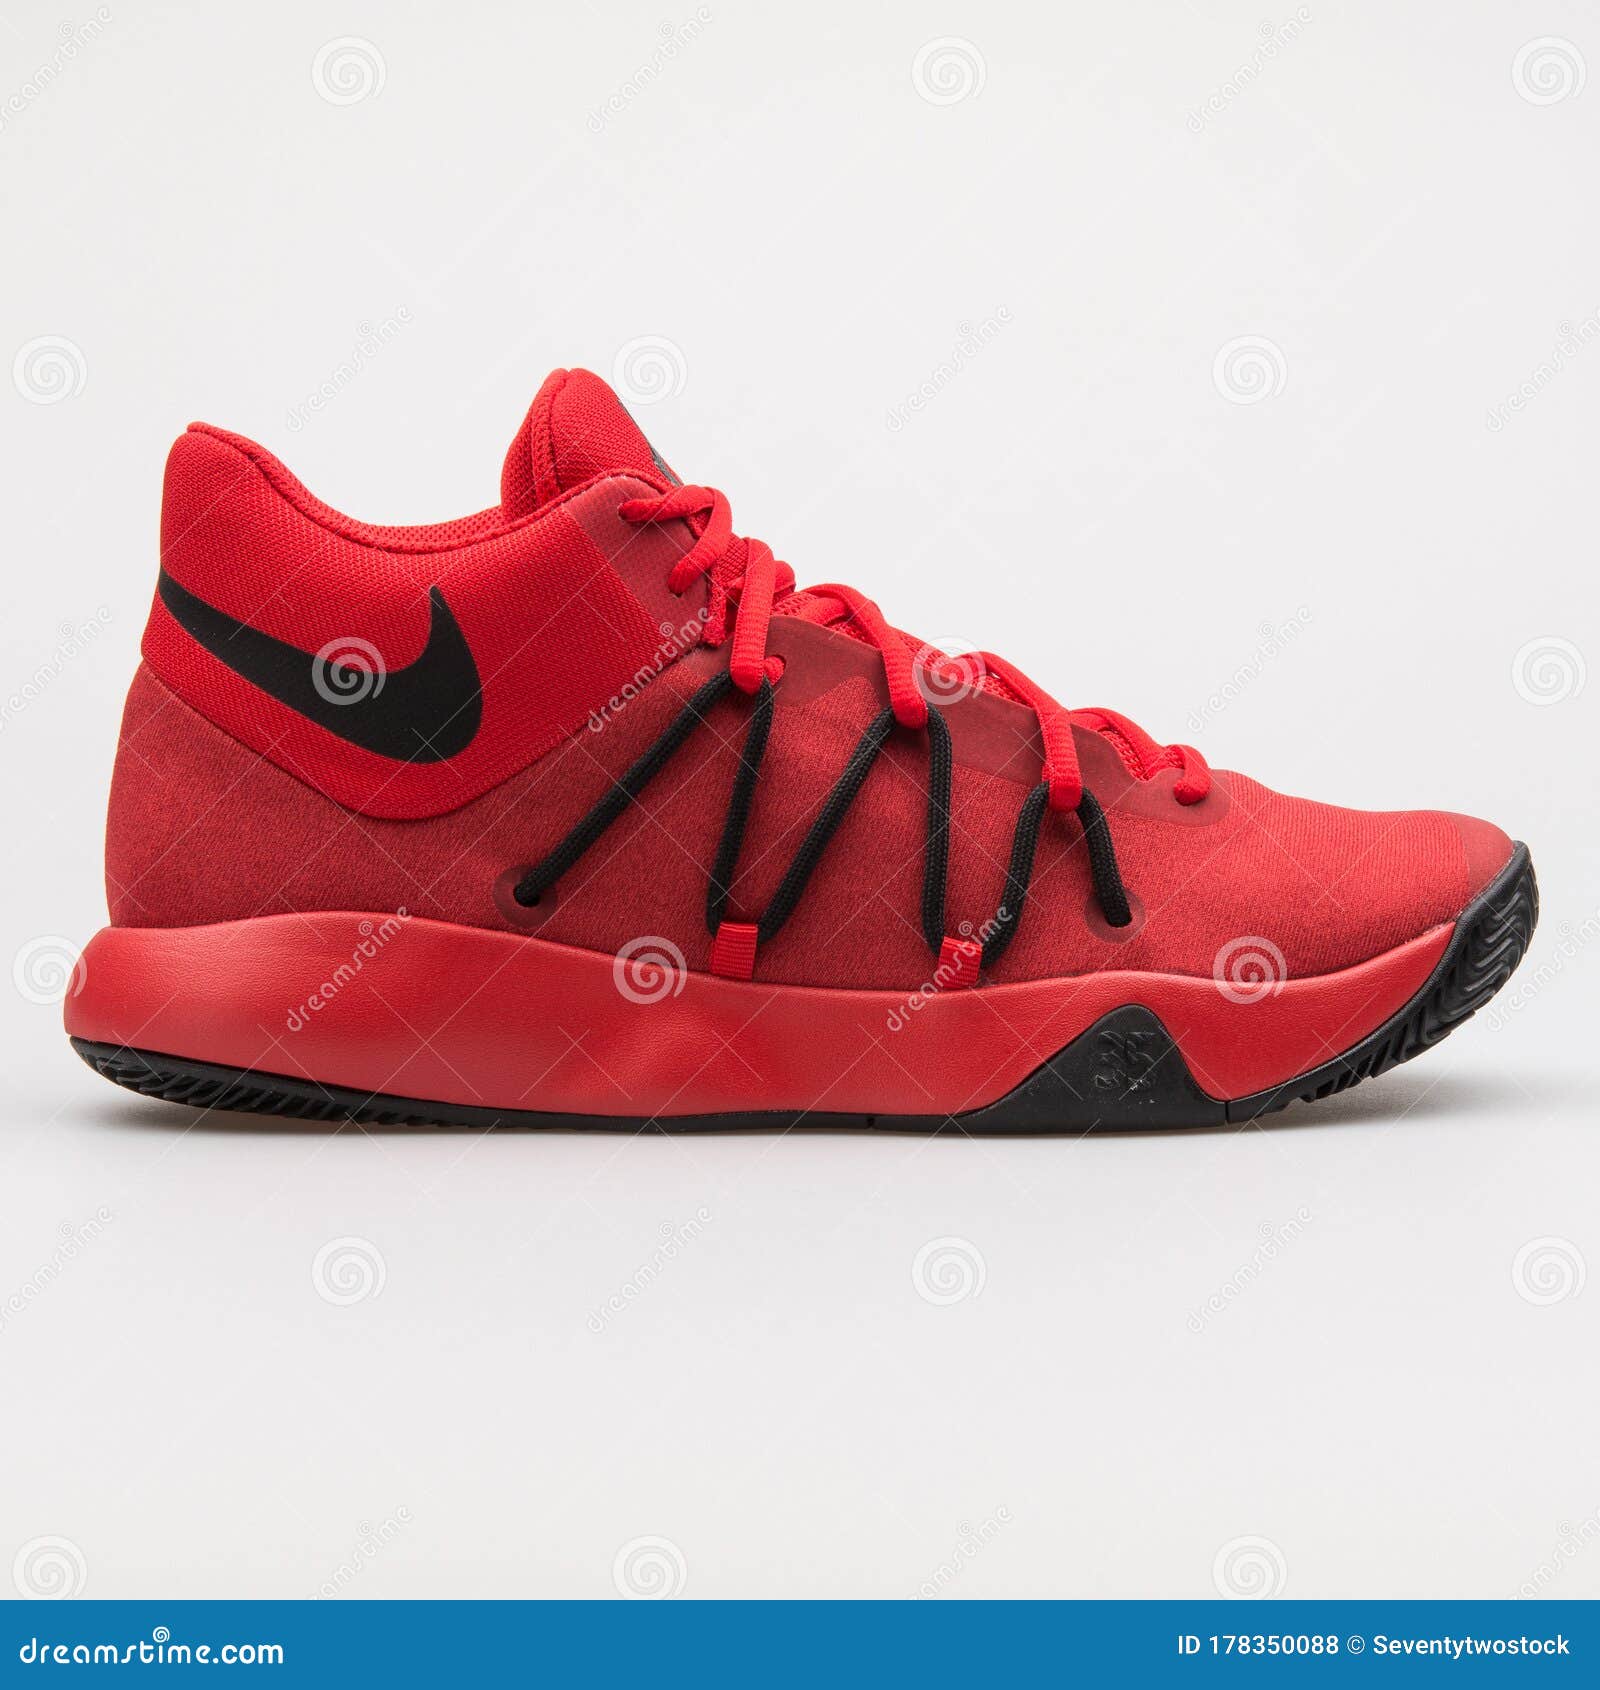 Nike Kd Trey V Pañuelo Rojo Y Negro Foto de archivo editorial - Imagen de equipo, retroceder: 178350088